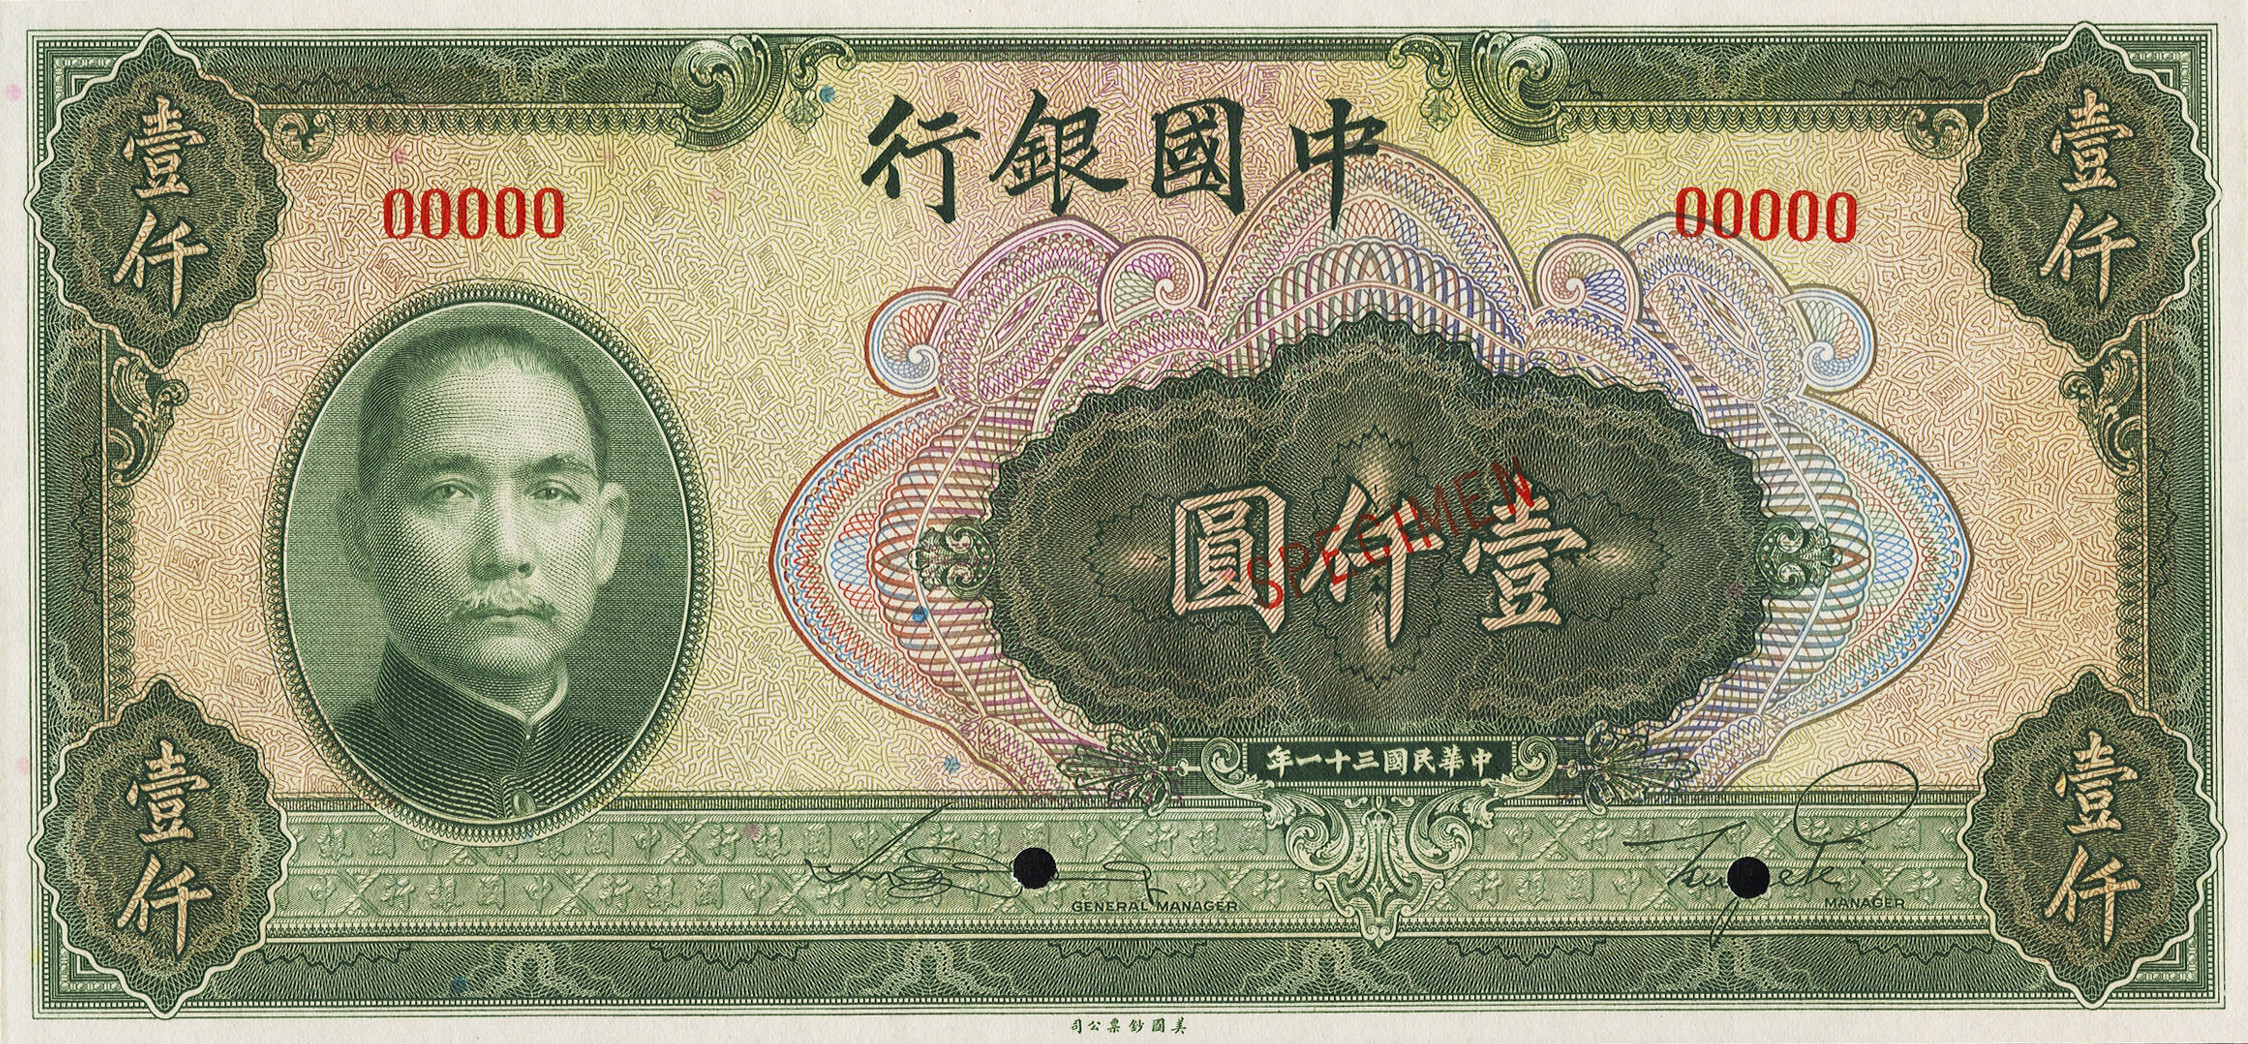 1000 yuan - Série 1942